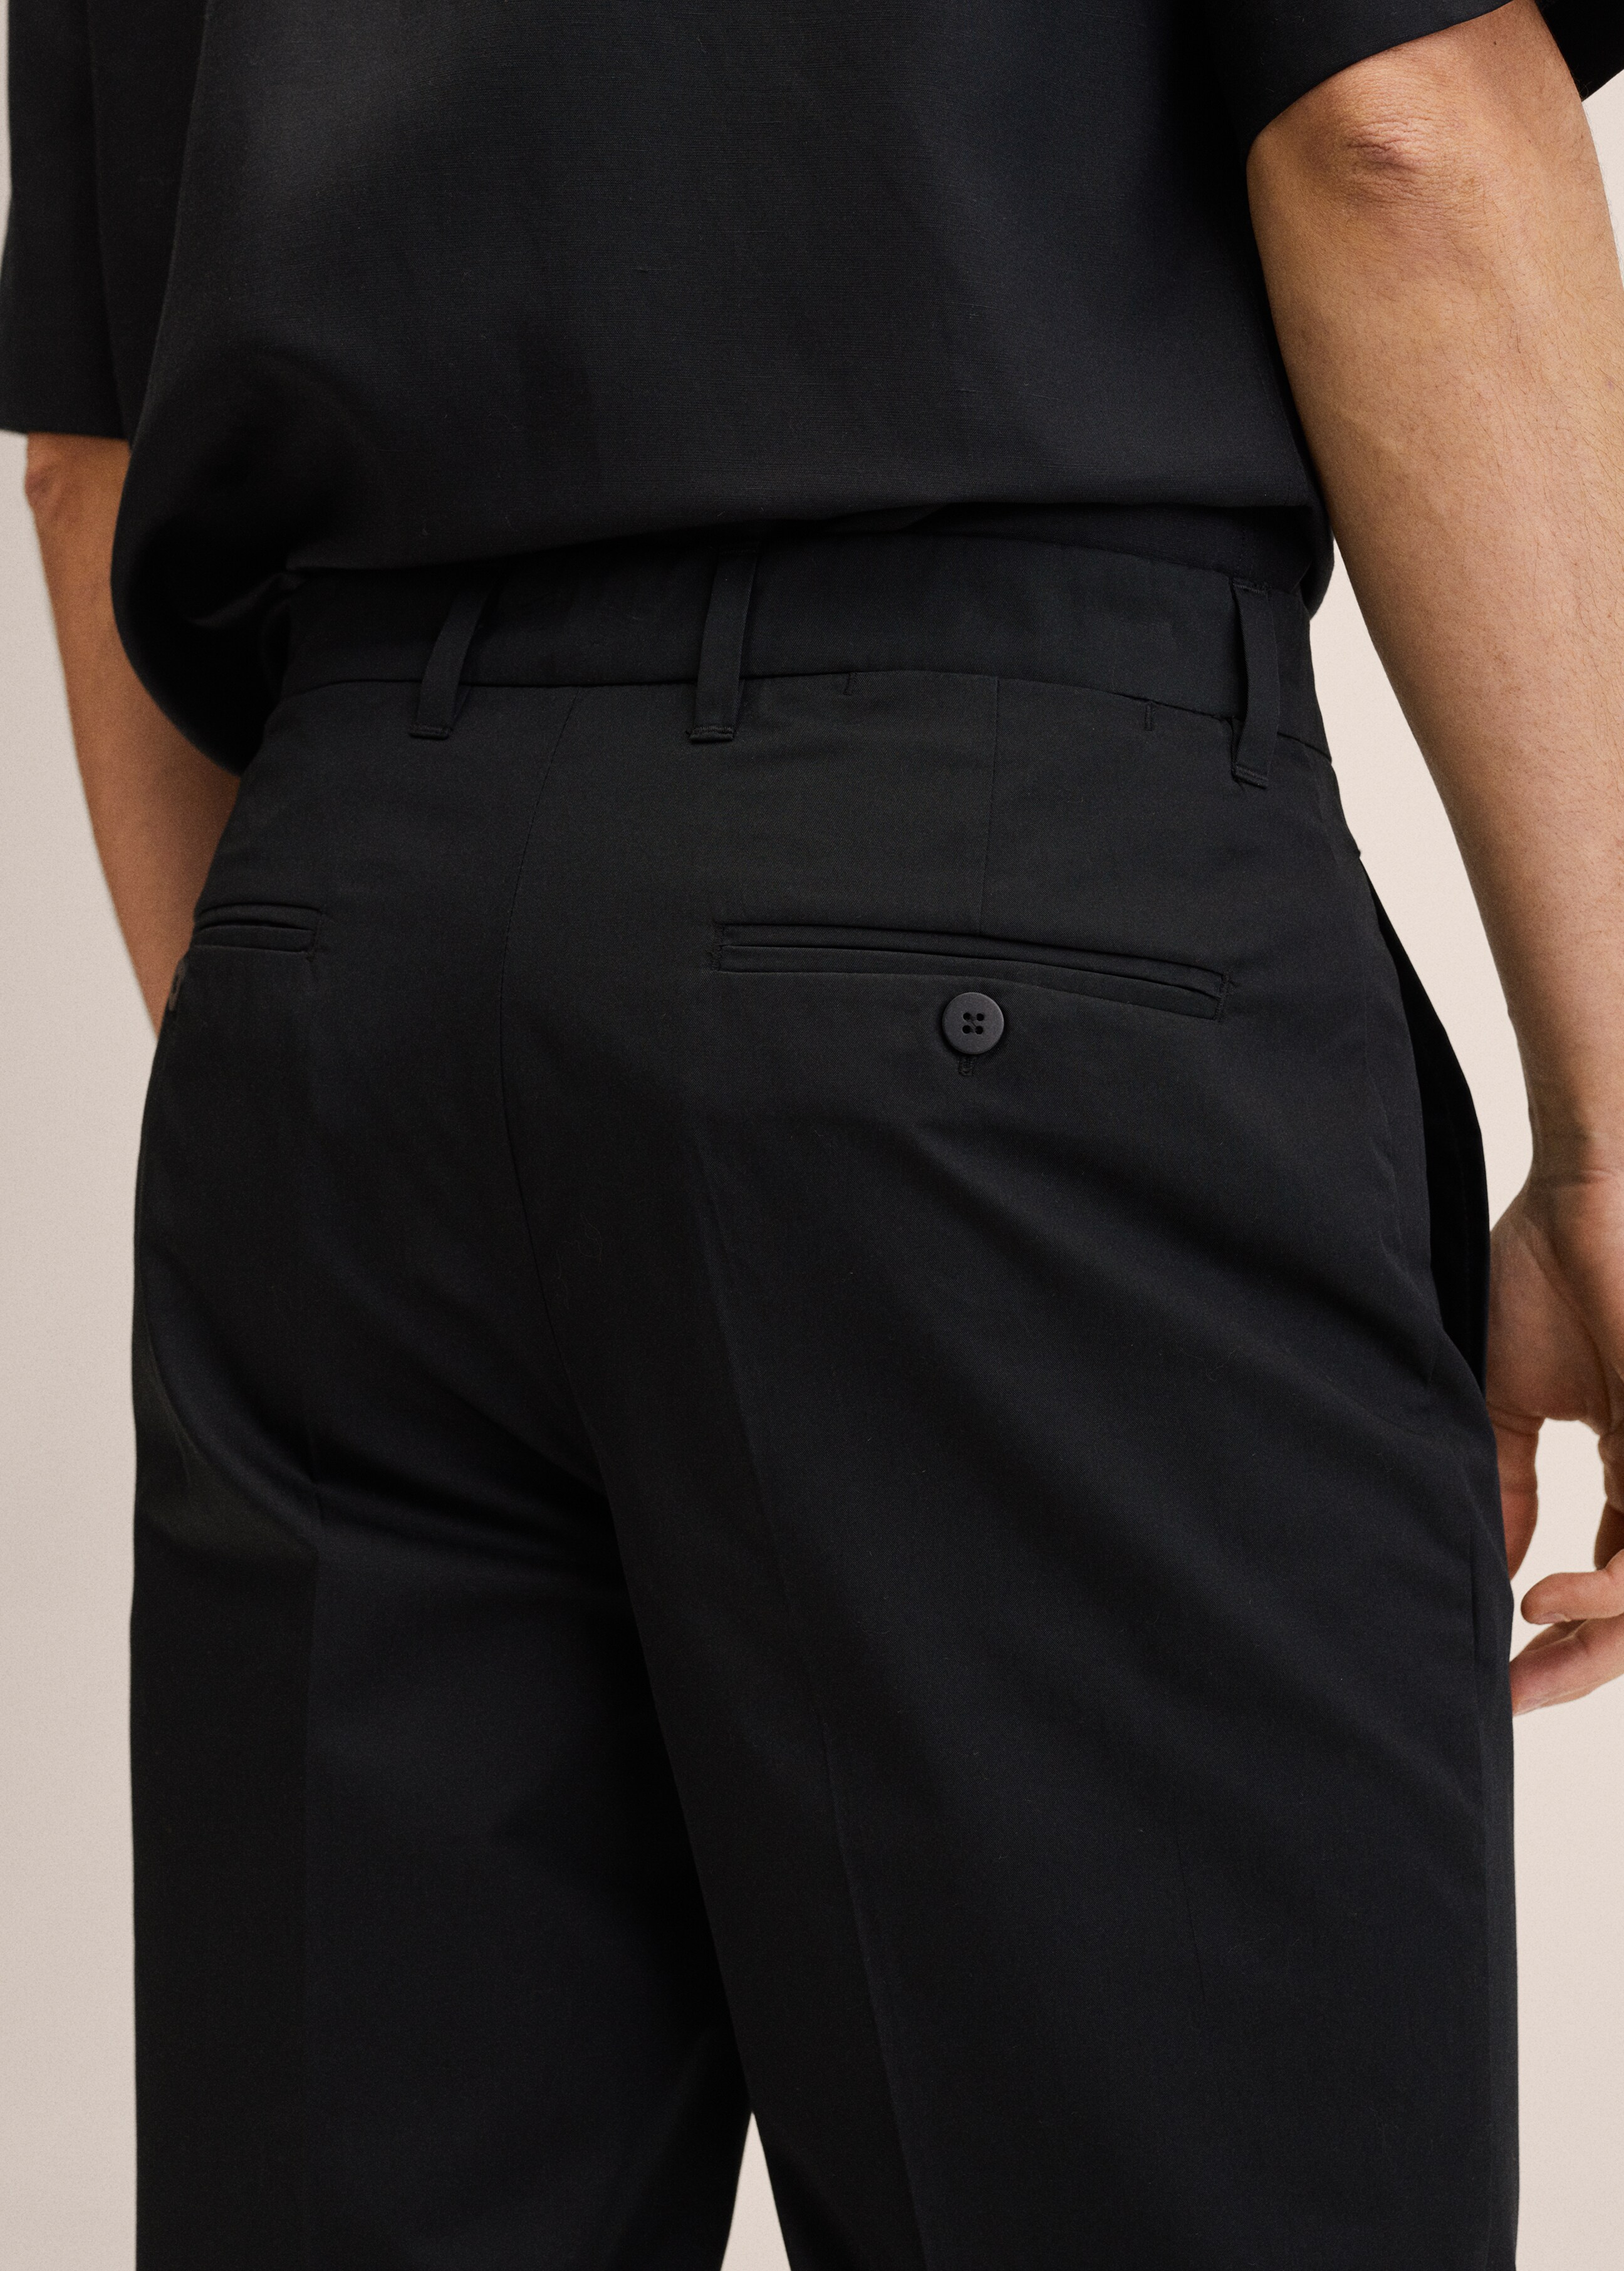 Pantalón slim fit algodón - Detalle del artículo 3